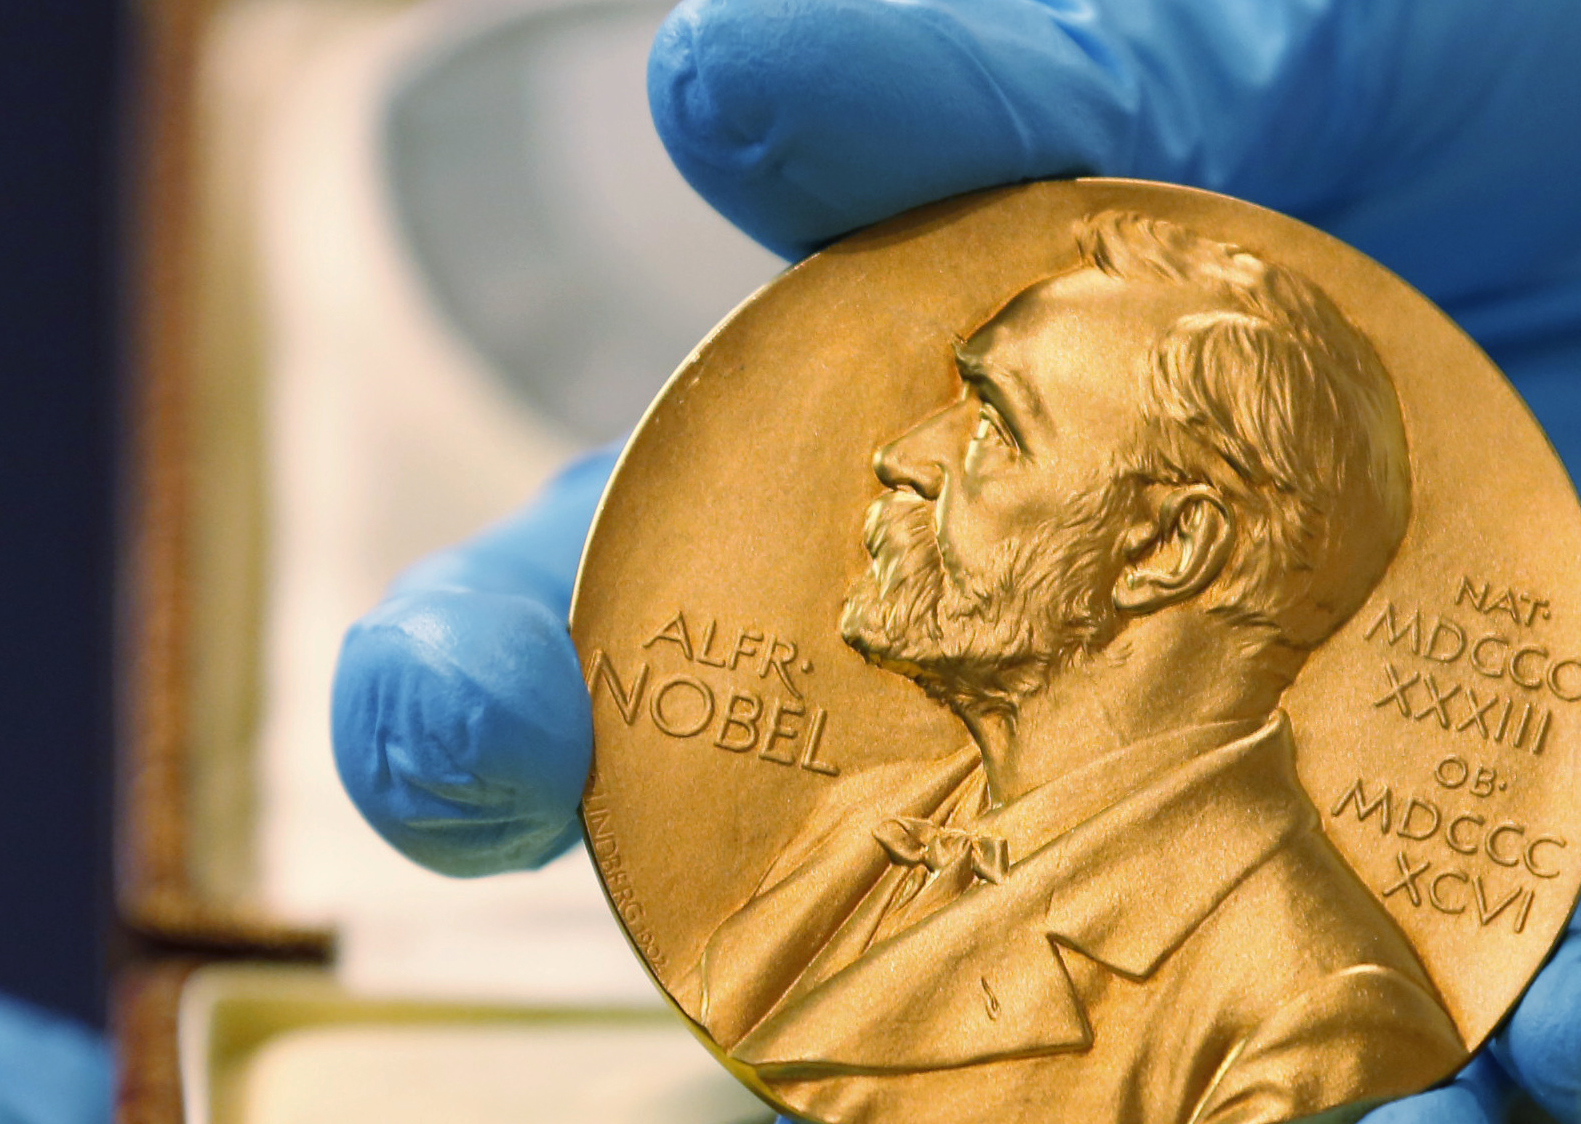 Нобеловата награда се състои от златен медал, диплом и парична сума